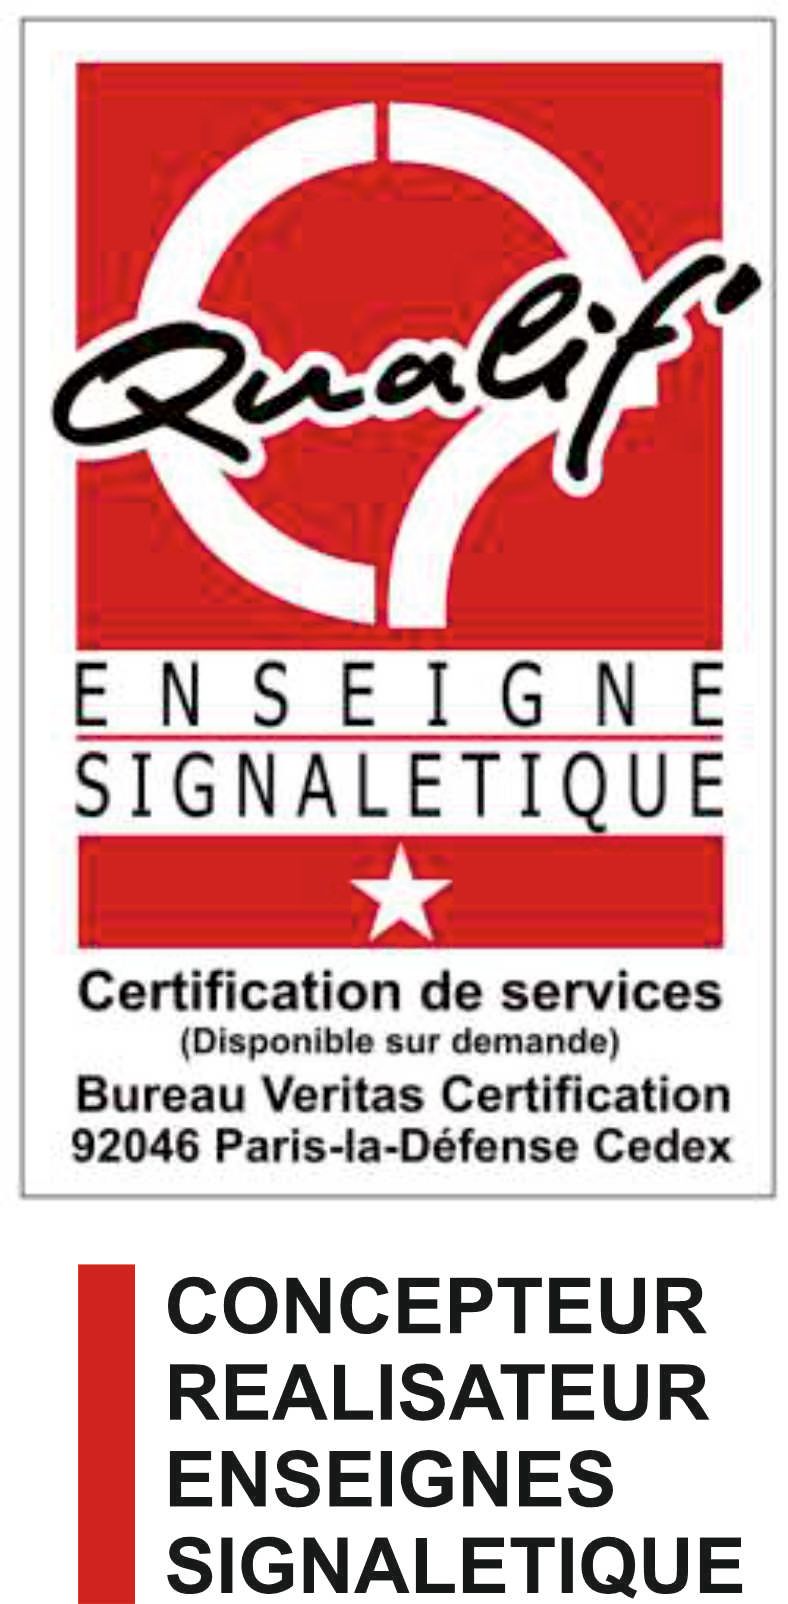 Certification de services : Enseigne Signalétique